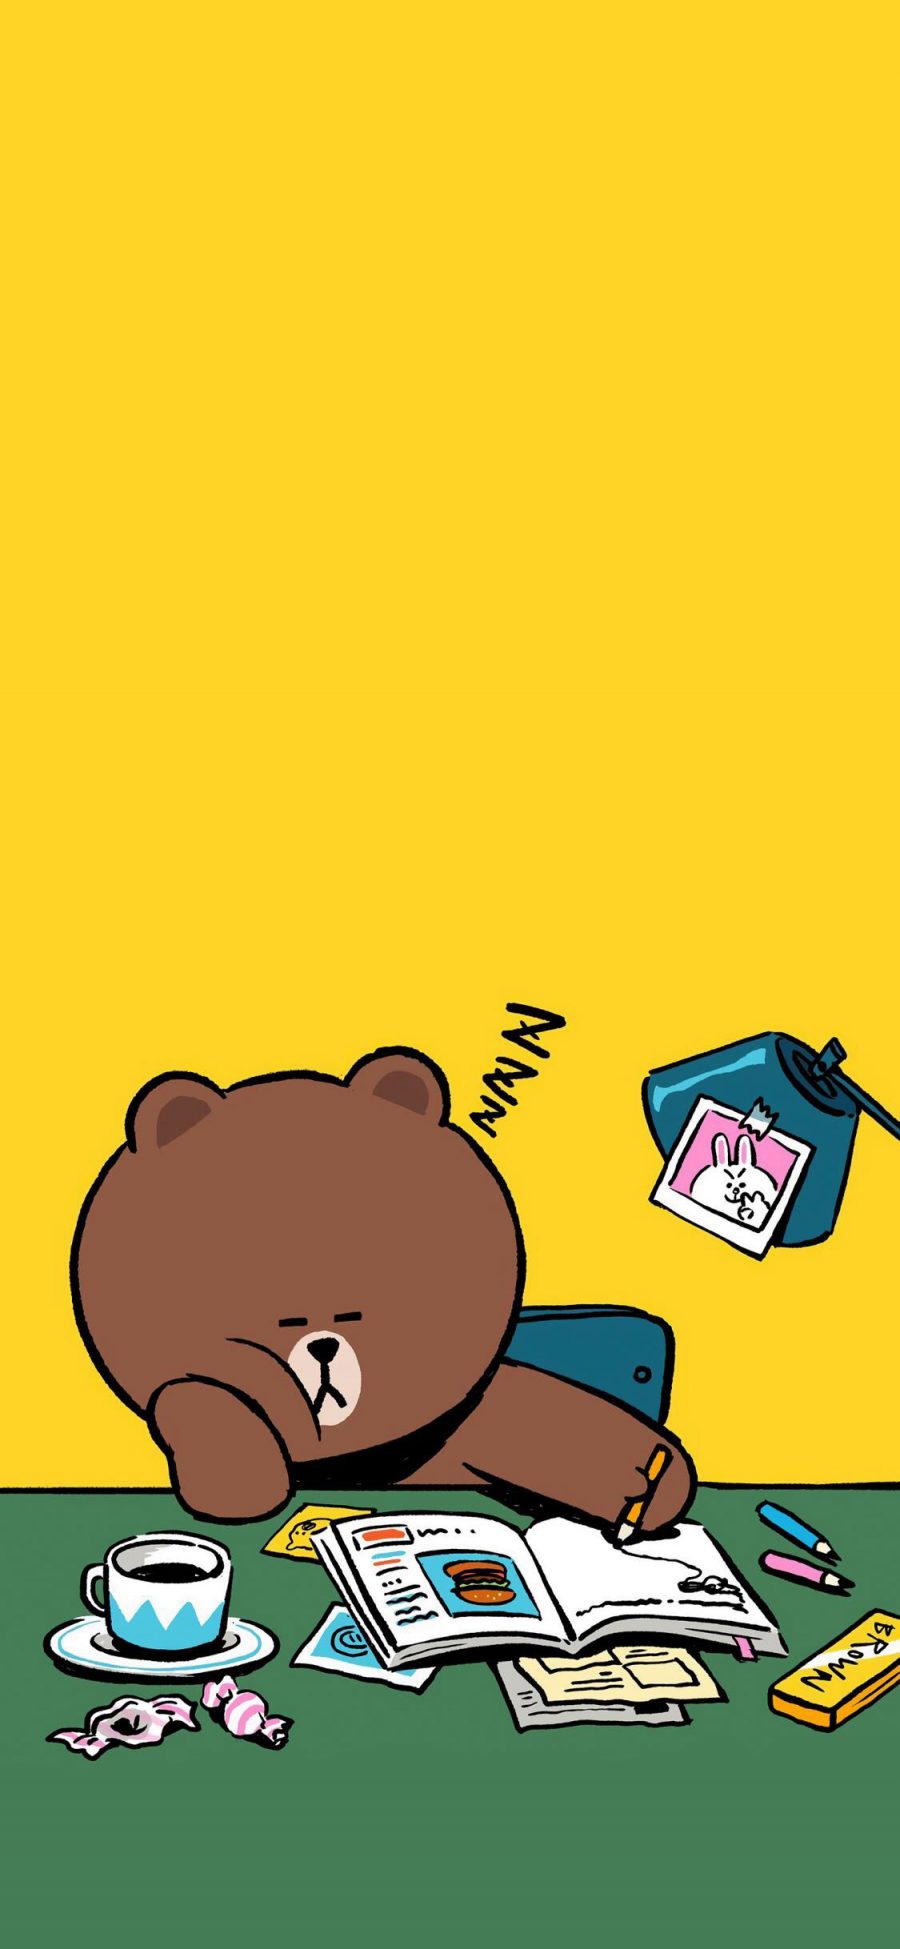 [2436×1125]布朗熊 linefriends 书桌 黄色 可爱 卡通 苹果手机动漫壁纸图片